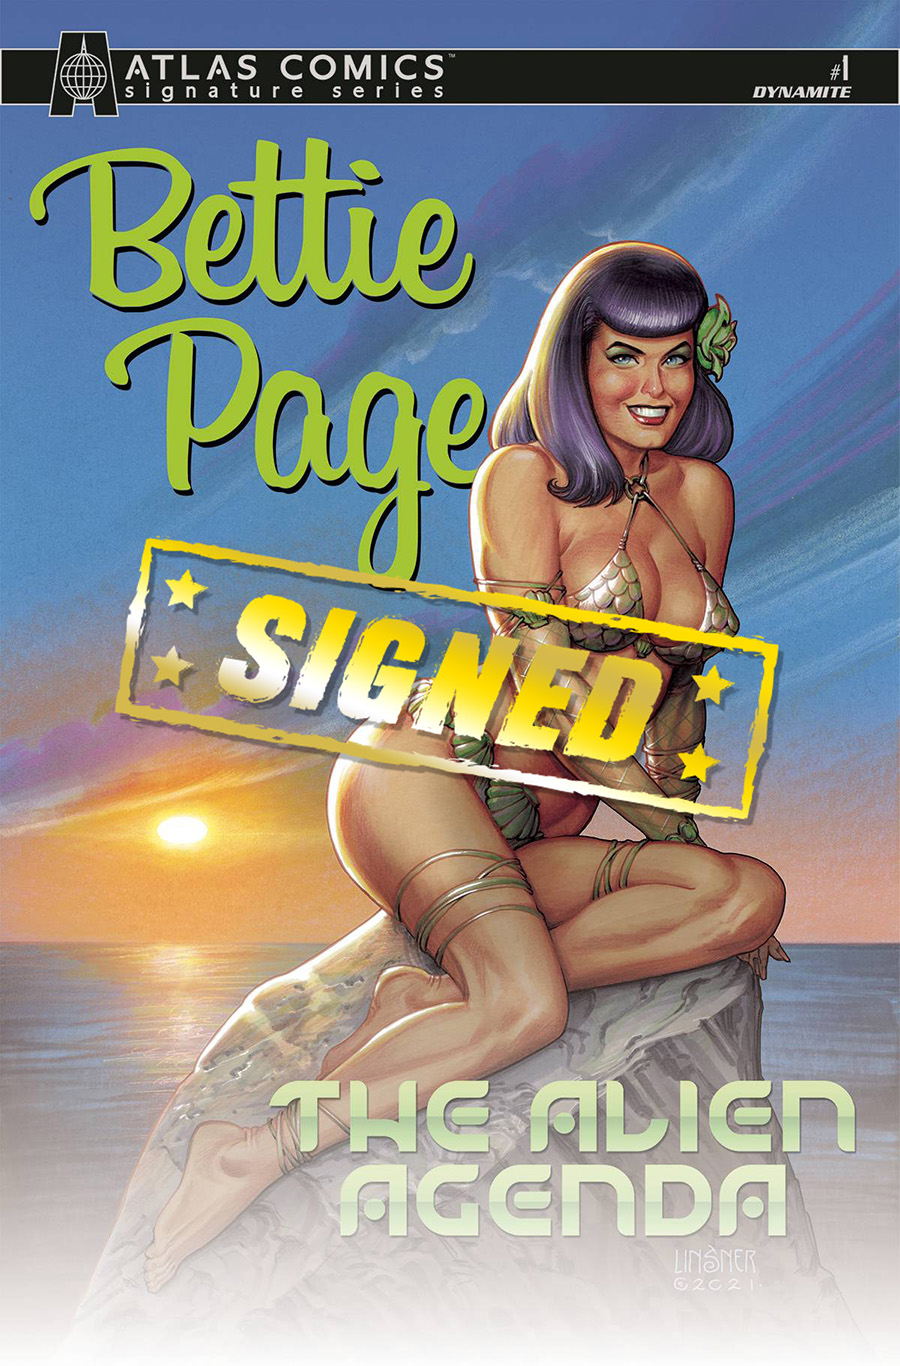 Bettie Page Alien Agenda #1 Cover M Atlas Comics Signature Series Signed By Ani-Mia